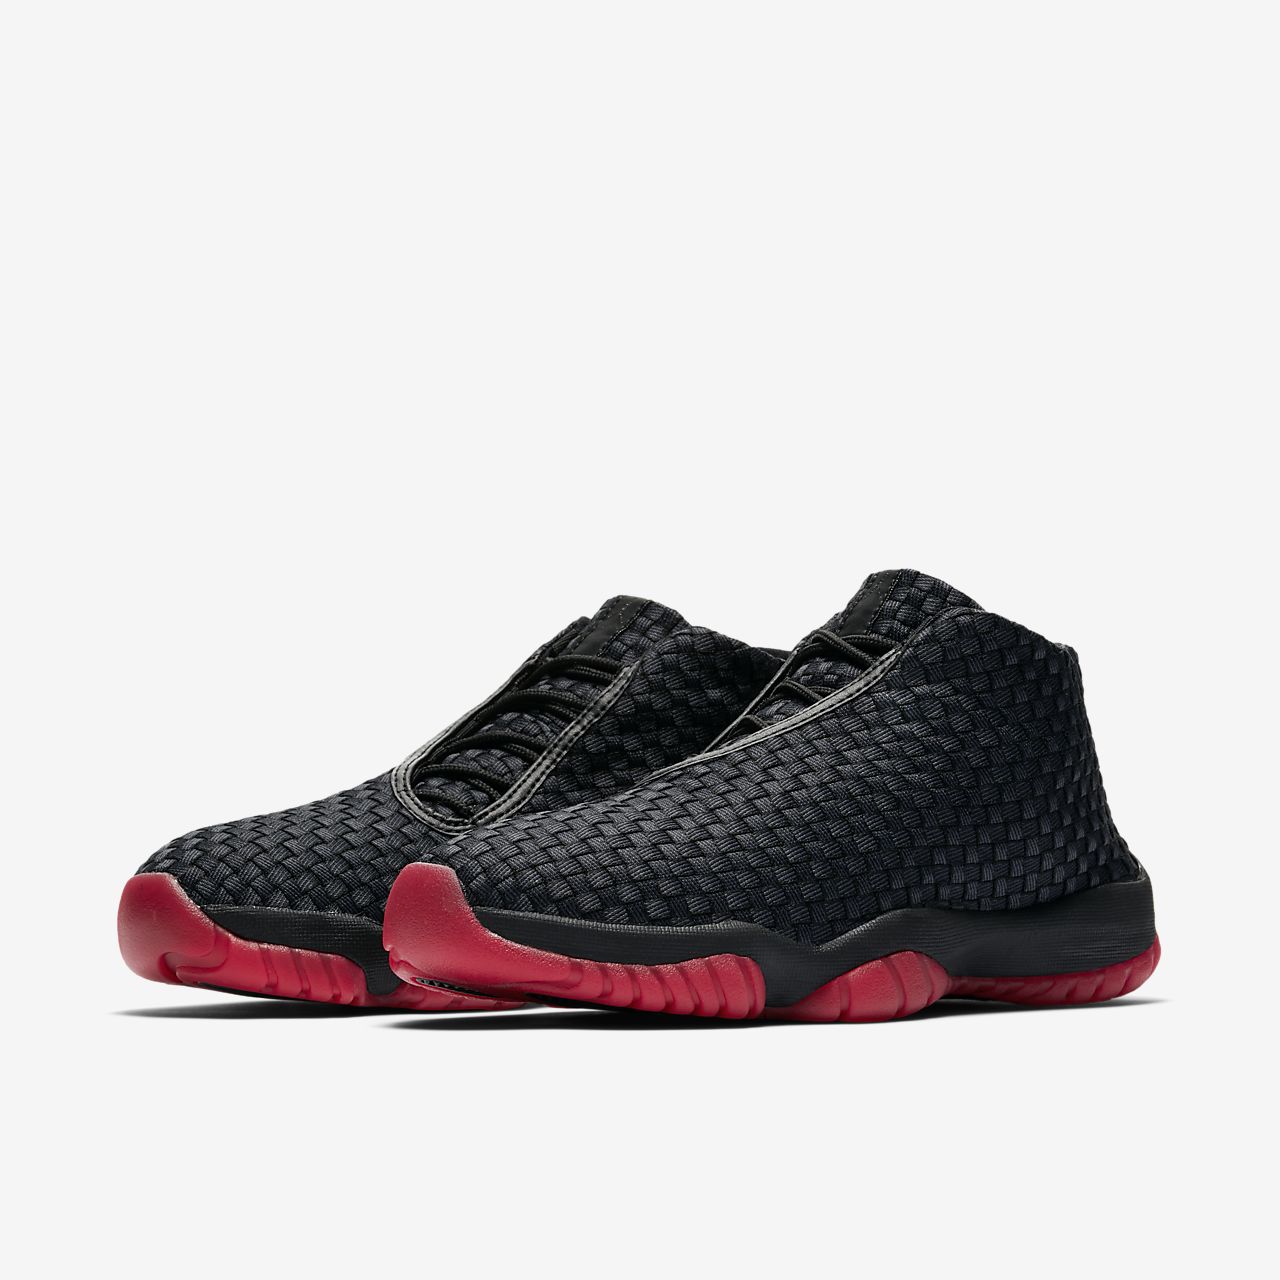 Nike Air Jordan Future - Jordan Sko - Sort/Hvide/Rød | DK-86403